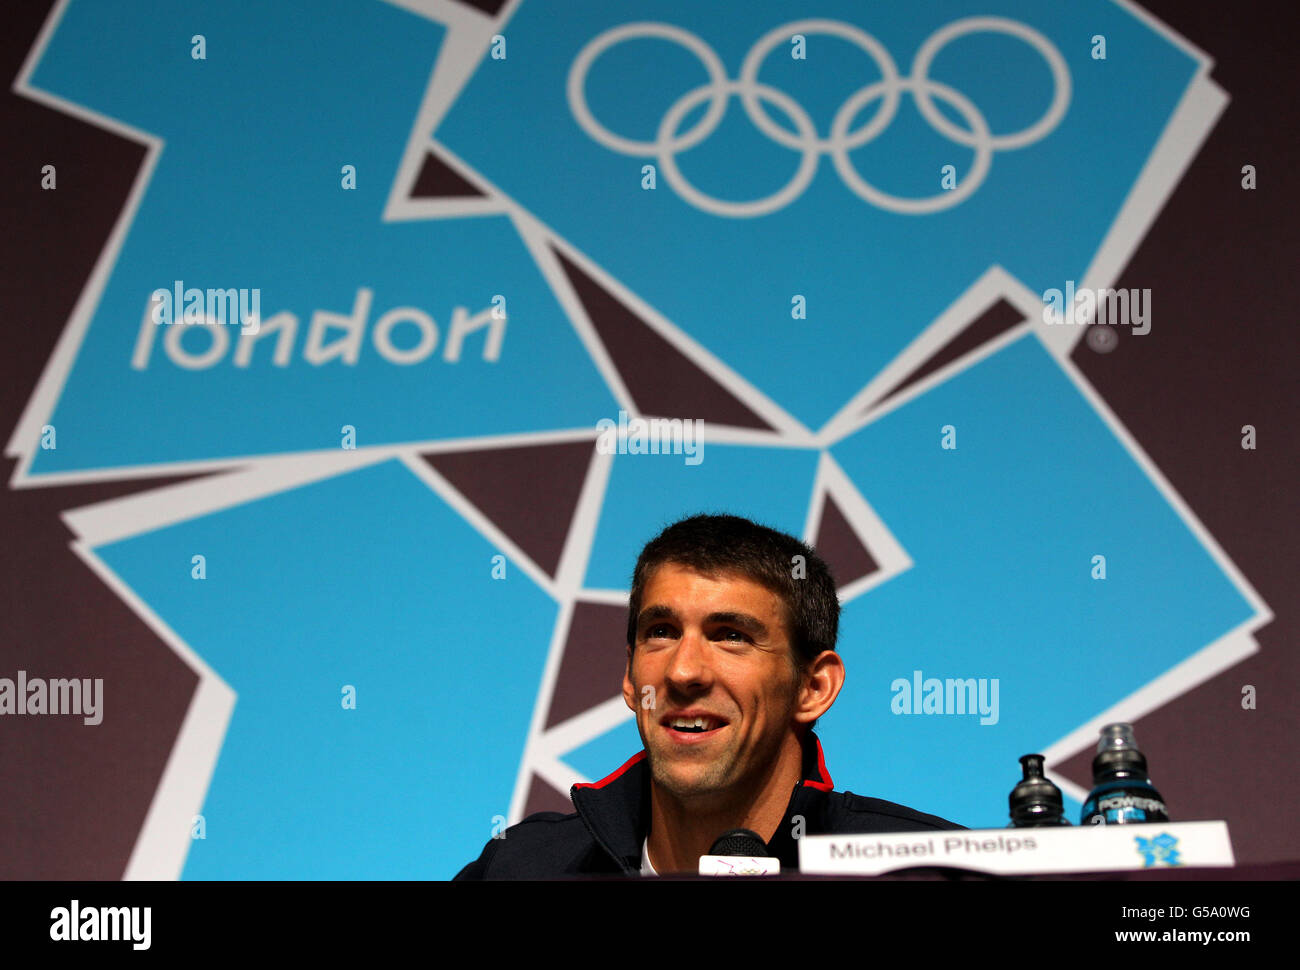 Olympische Spiele In London - Aktivitäten Vor Den Spielen - Donnerstag. Der US-Schwimmer Michael Phelps bei der Pressekonferenz im MPC, Olympic Park, London. Stockfoto